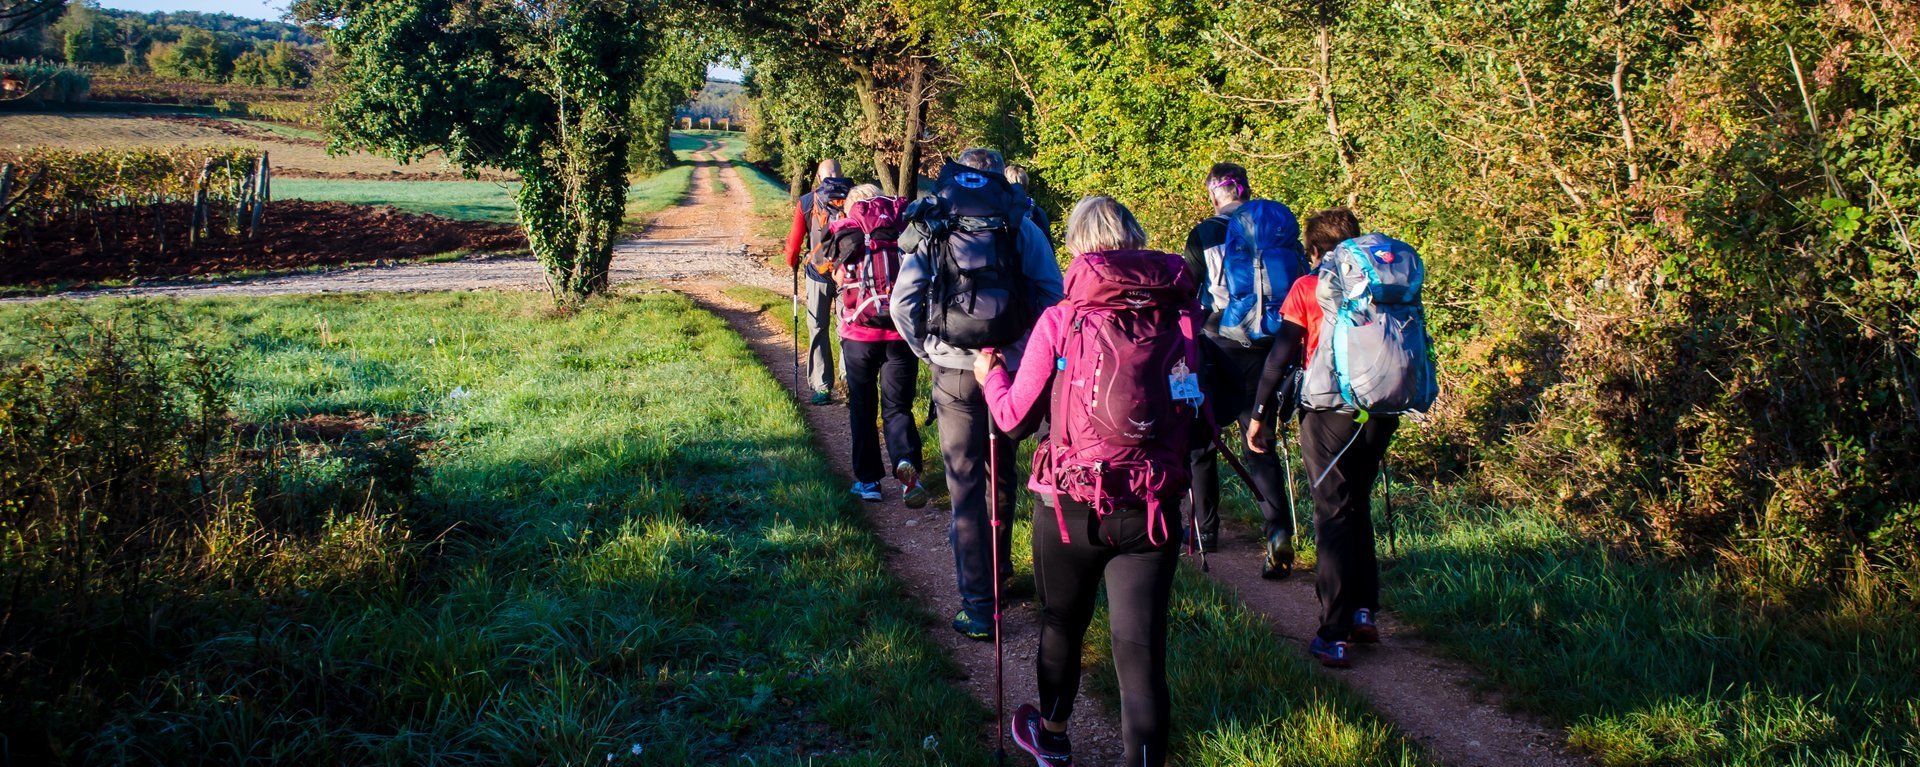 Frauen und Männer im Trekking-Outfit samt Rucksack und Stöcken beim Wandern auf einem Feldweg